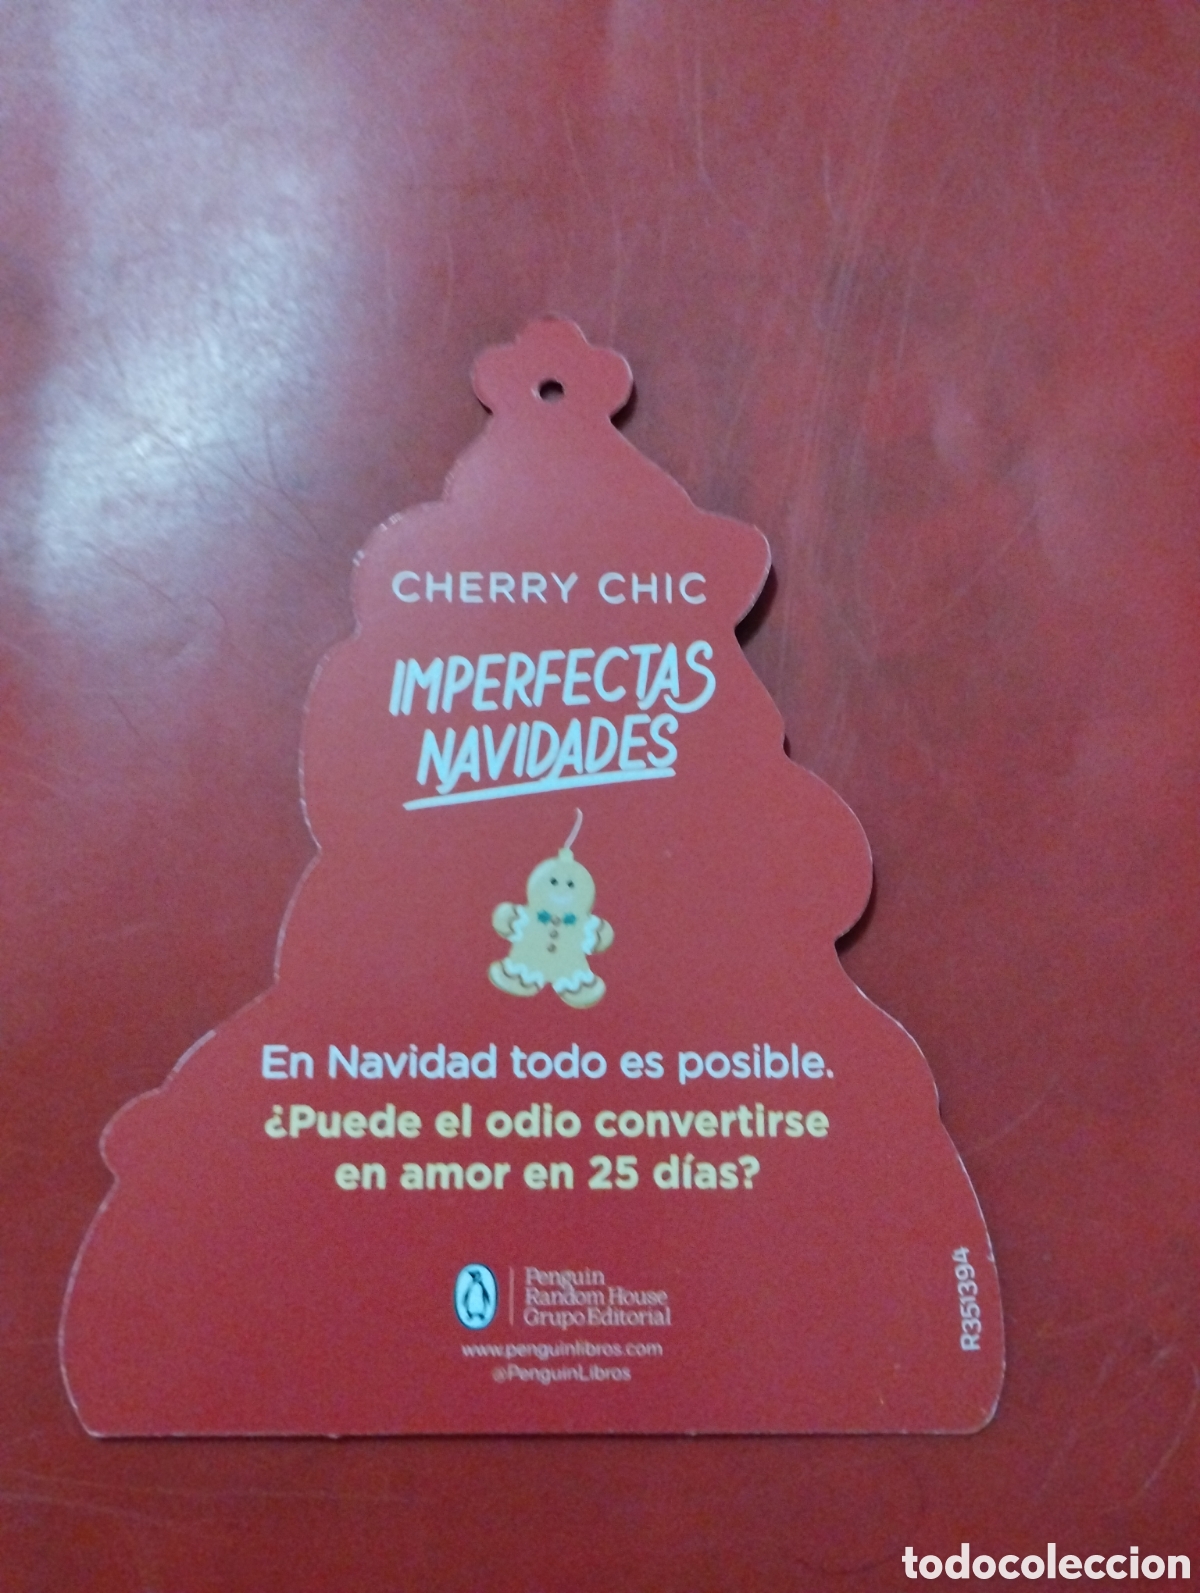 Cherry Chic  Penguin Libros